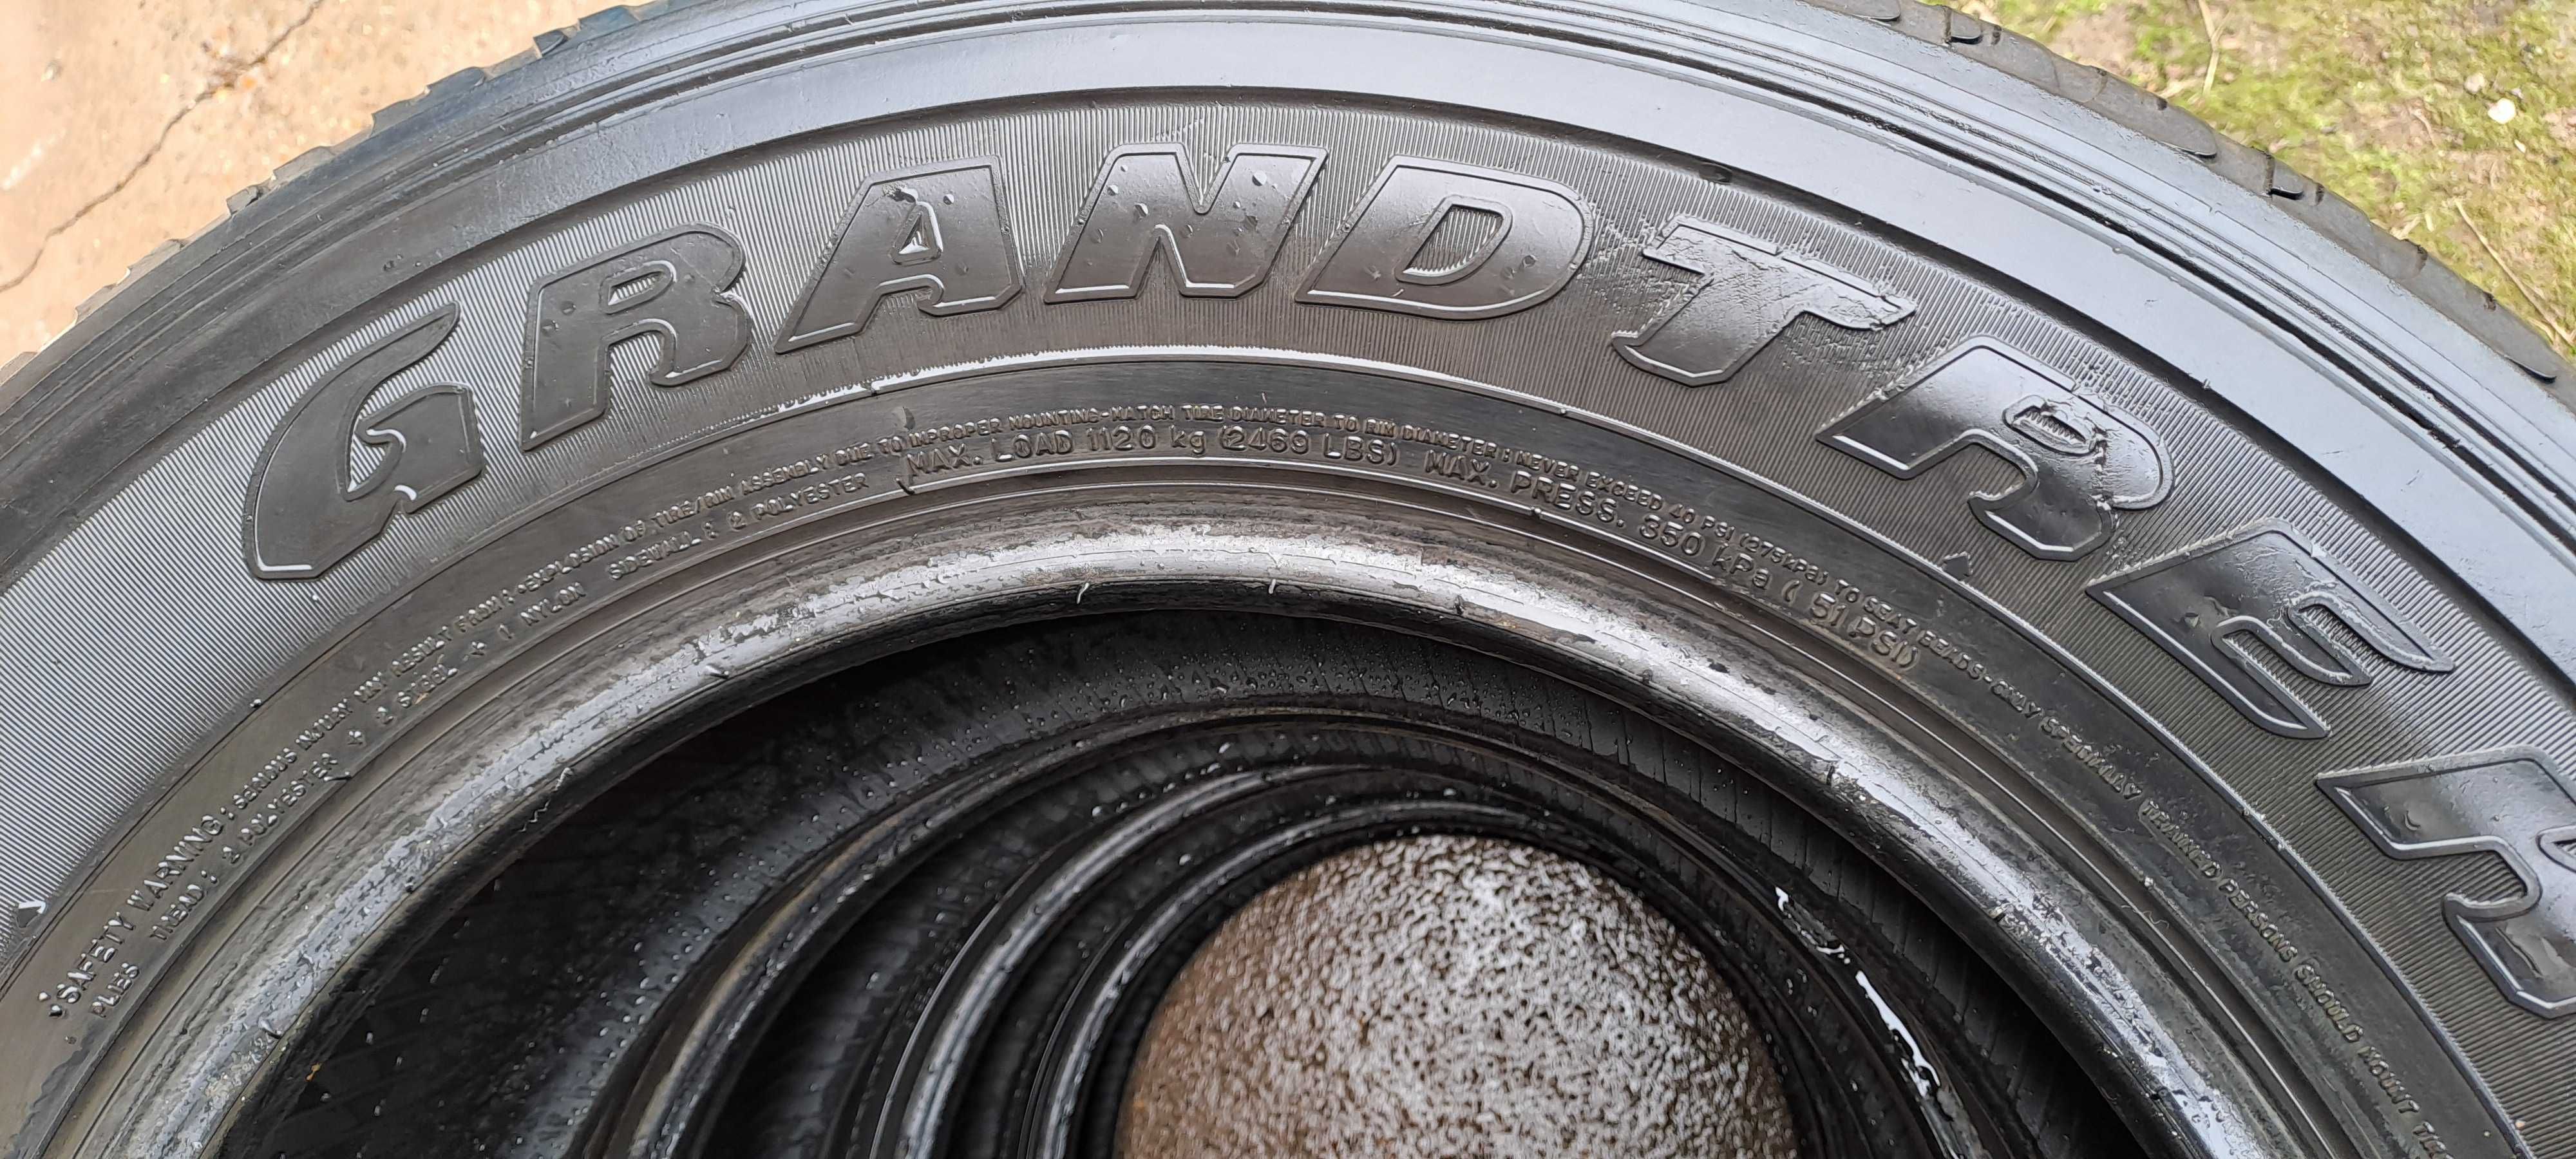 Летние шины Dunlop Grandtrek АТ20 265/65 R17 комплект 4шт